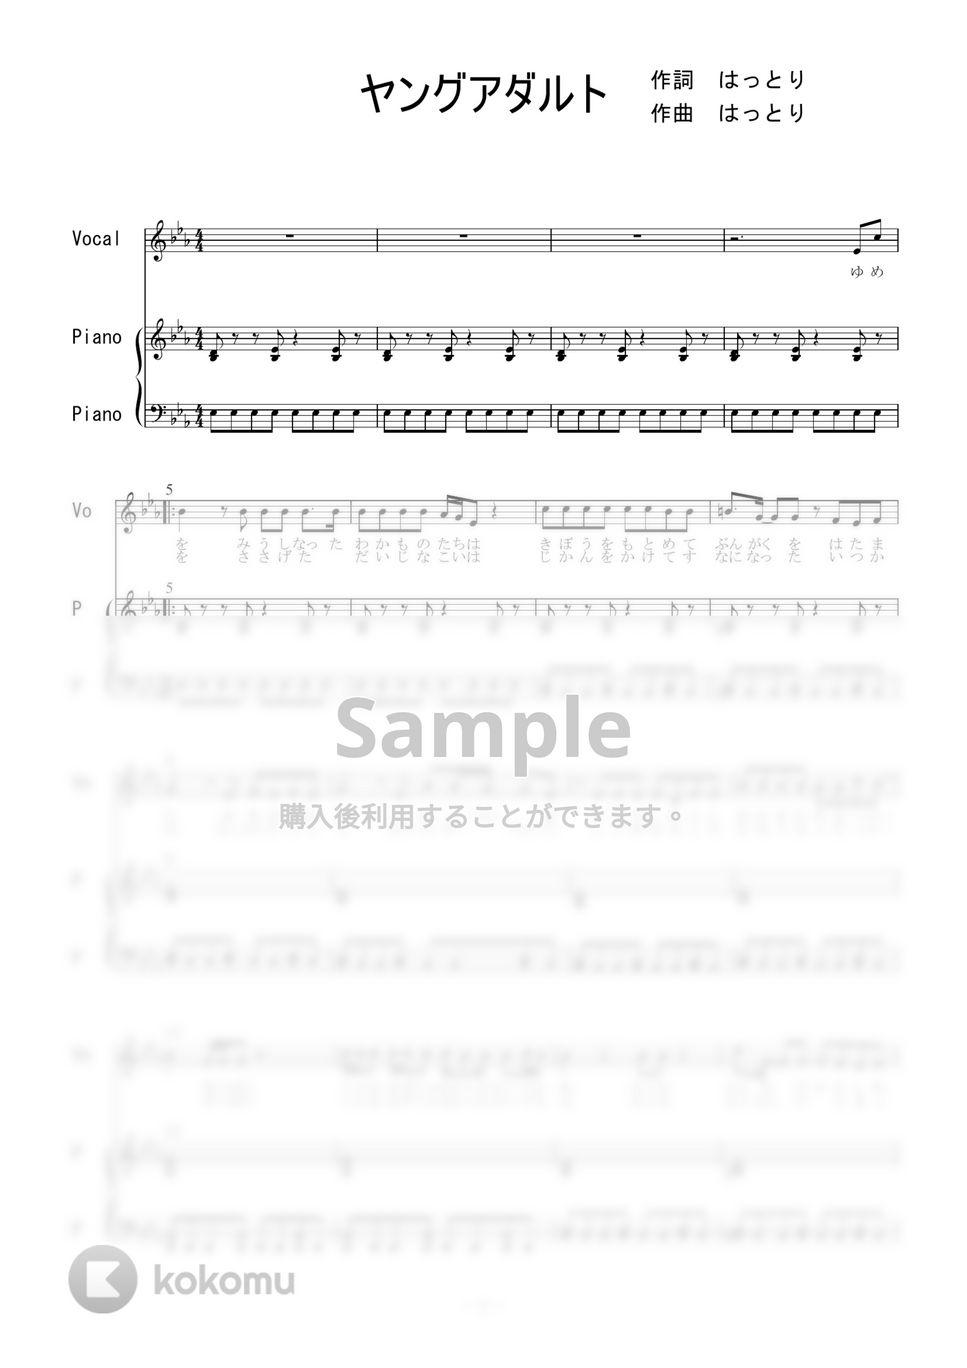 マカロニえんぴつ - ヤングアダルト (ピアノ弾き語り) by 二次元楽譜製作所